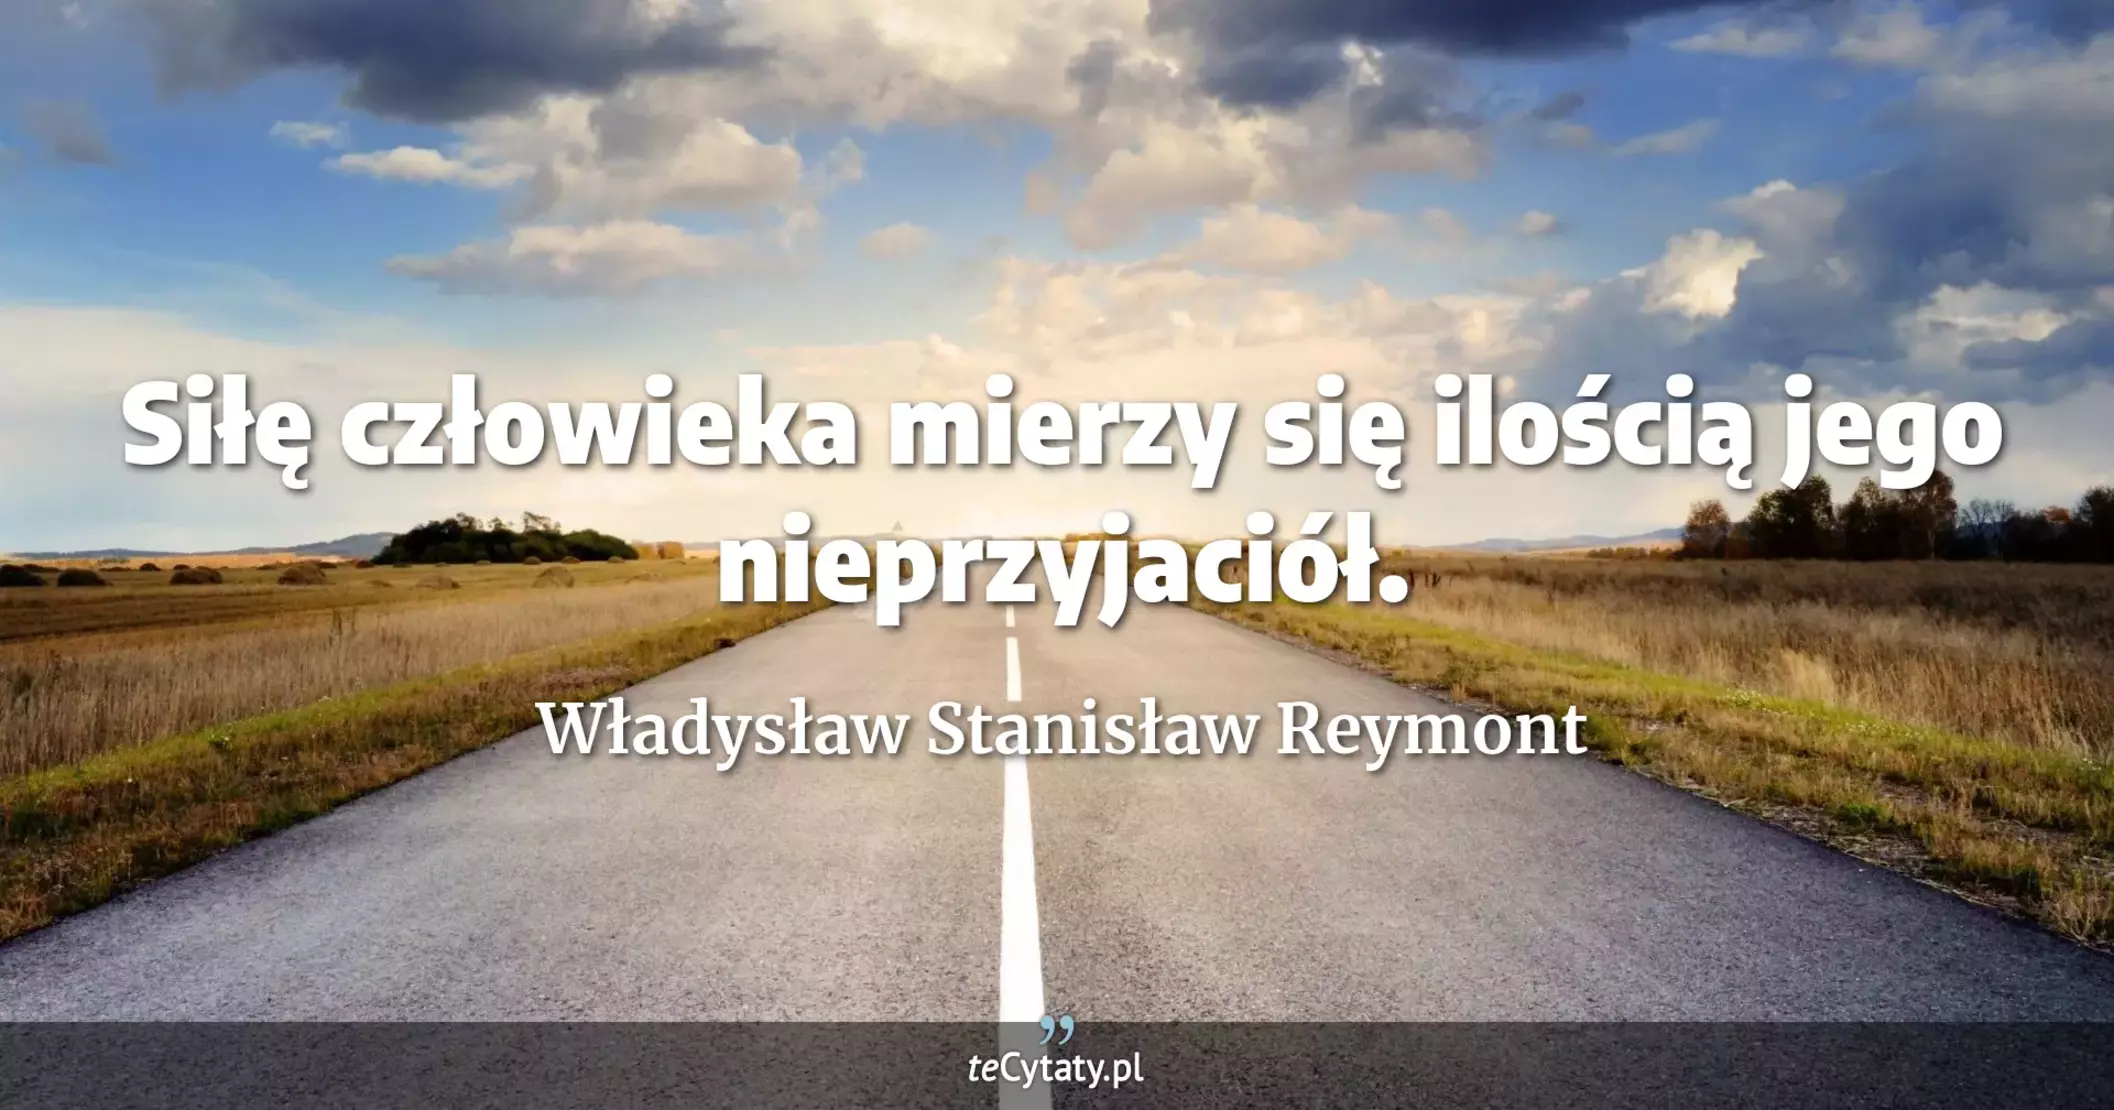 Siłę człowieka mierzy się ilością jego nieprzyjaciół. - Władysław Stanisław Reymont